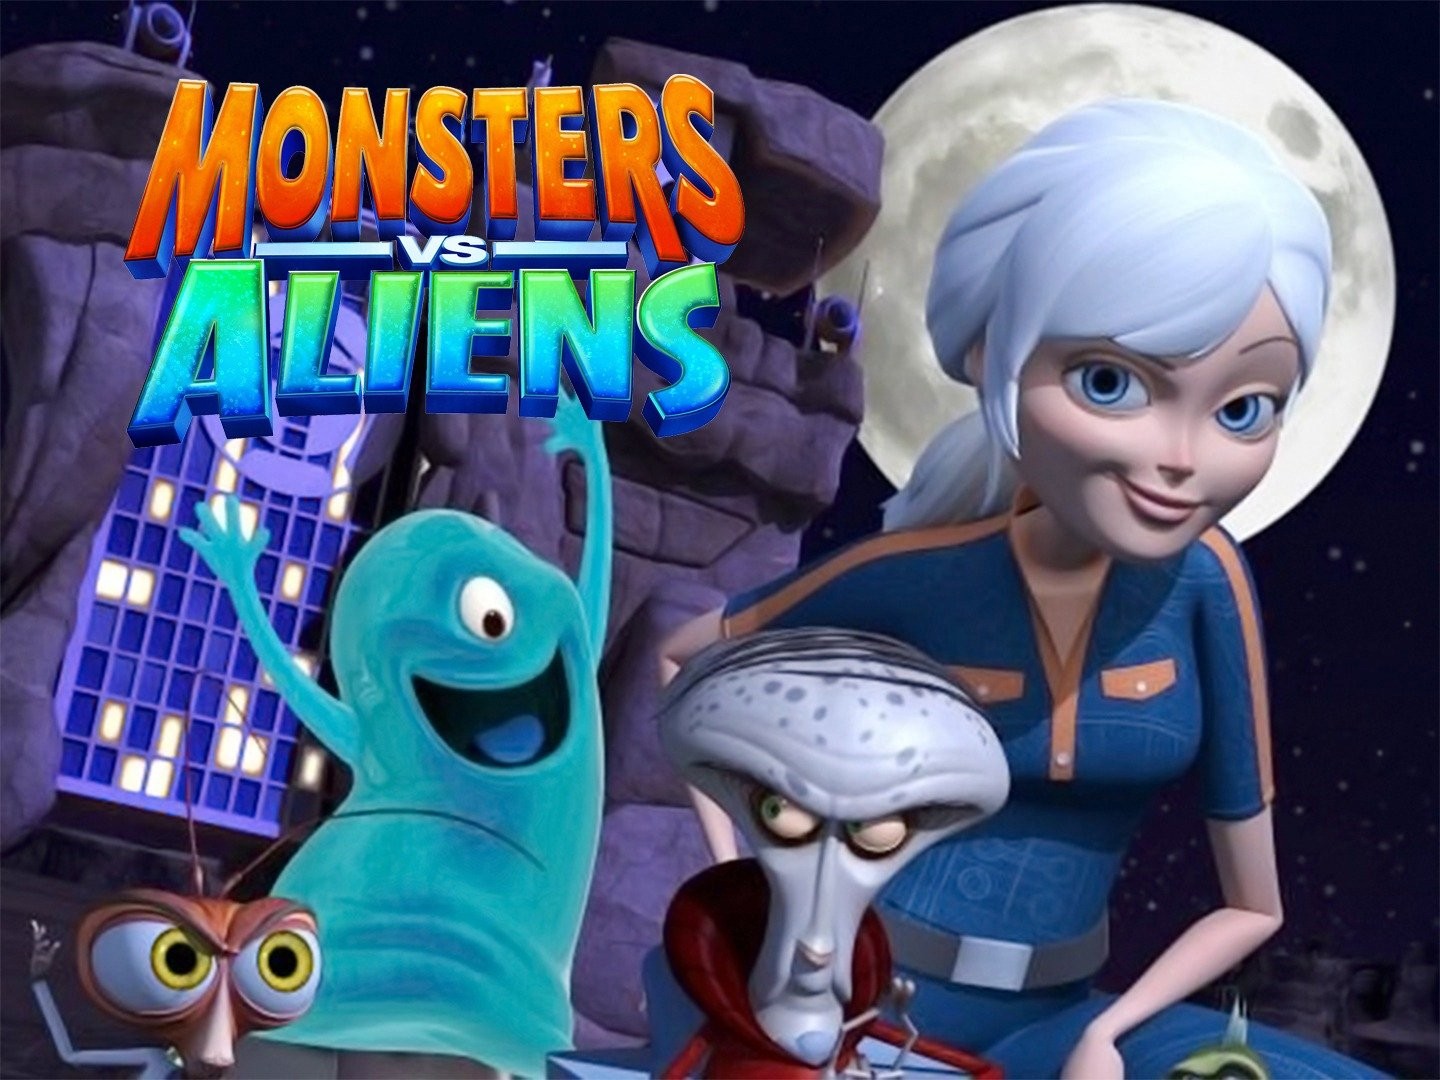 Monsters vs. Aliens - Rotten Tomatoes